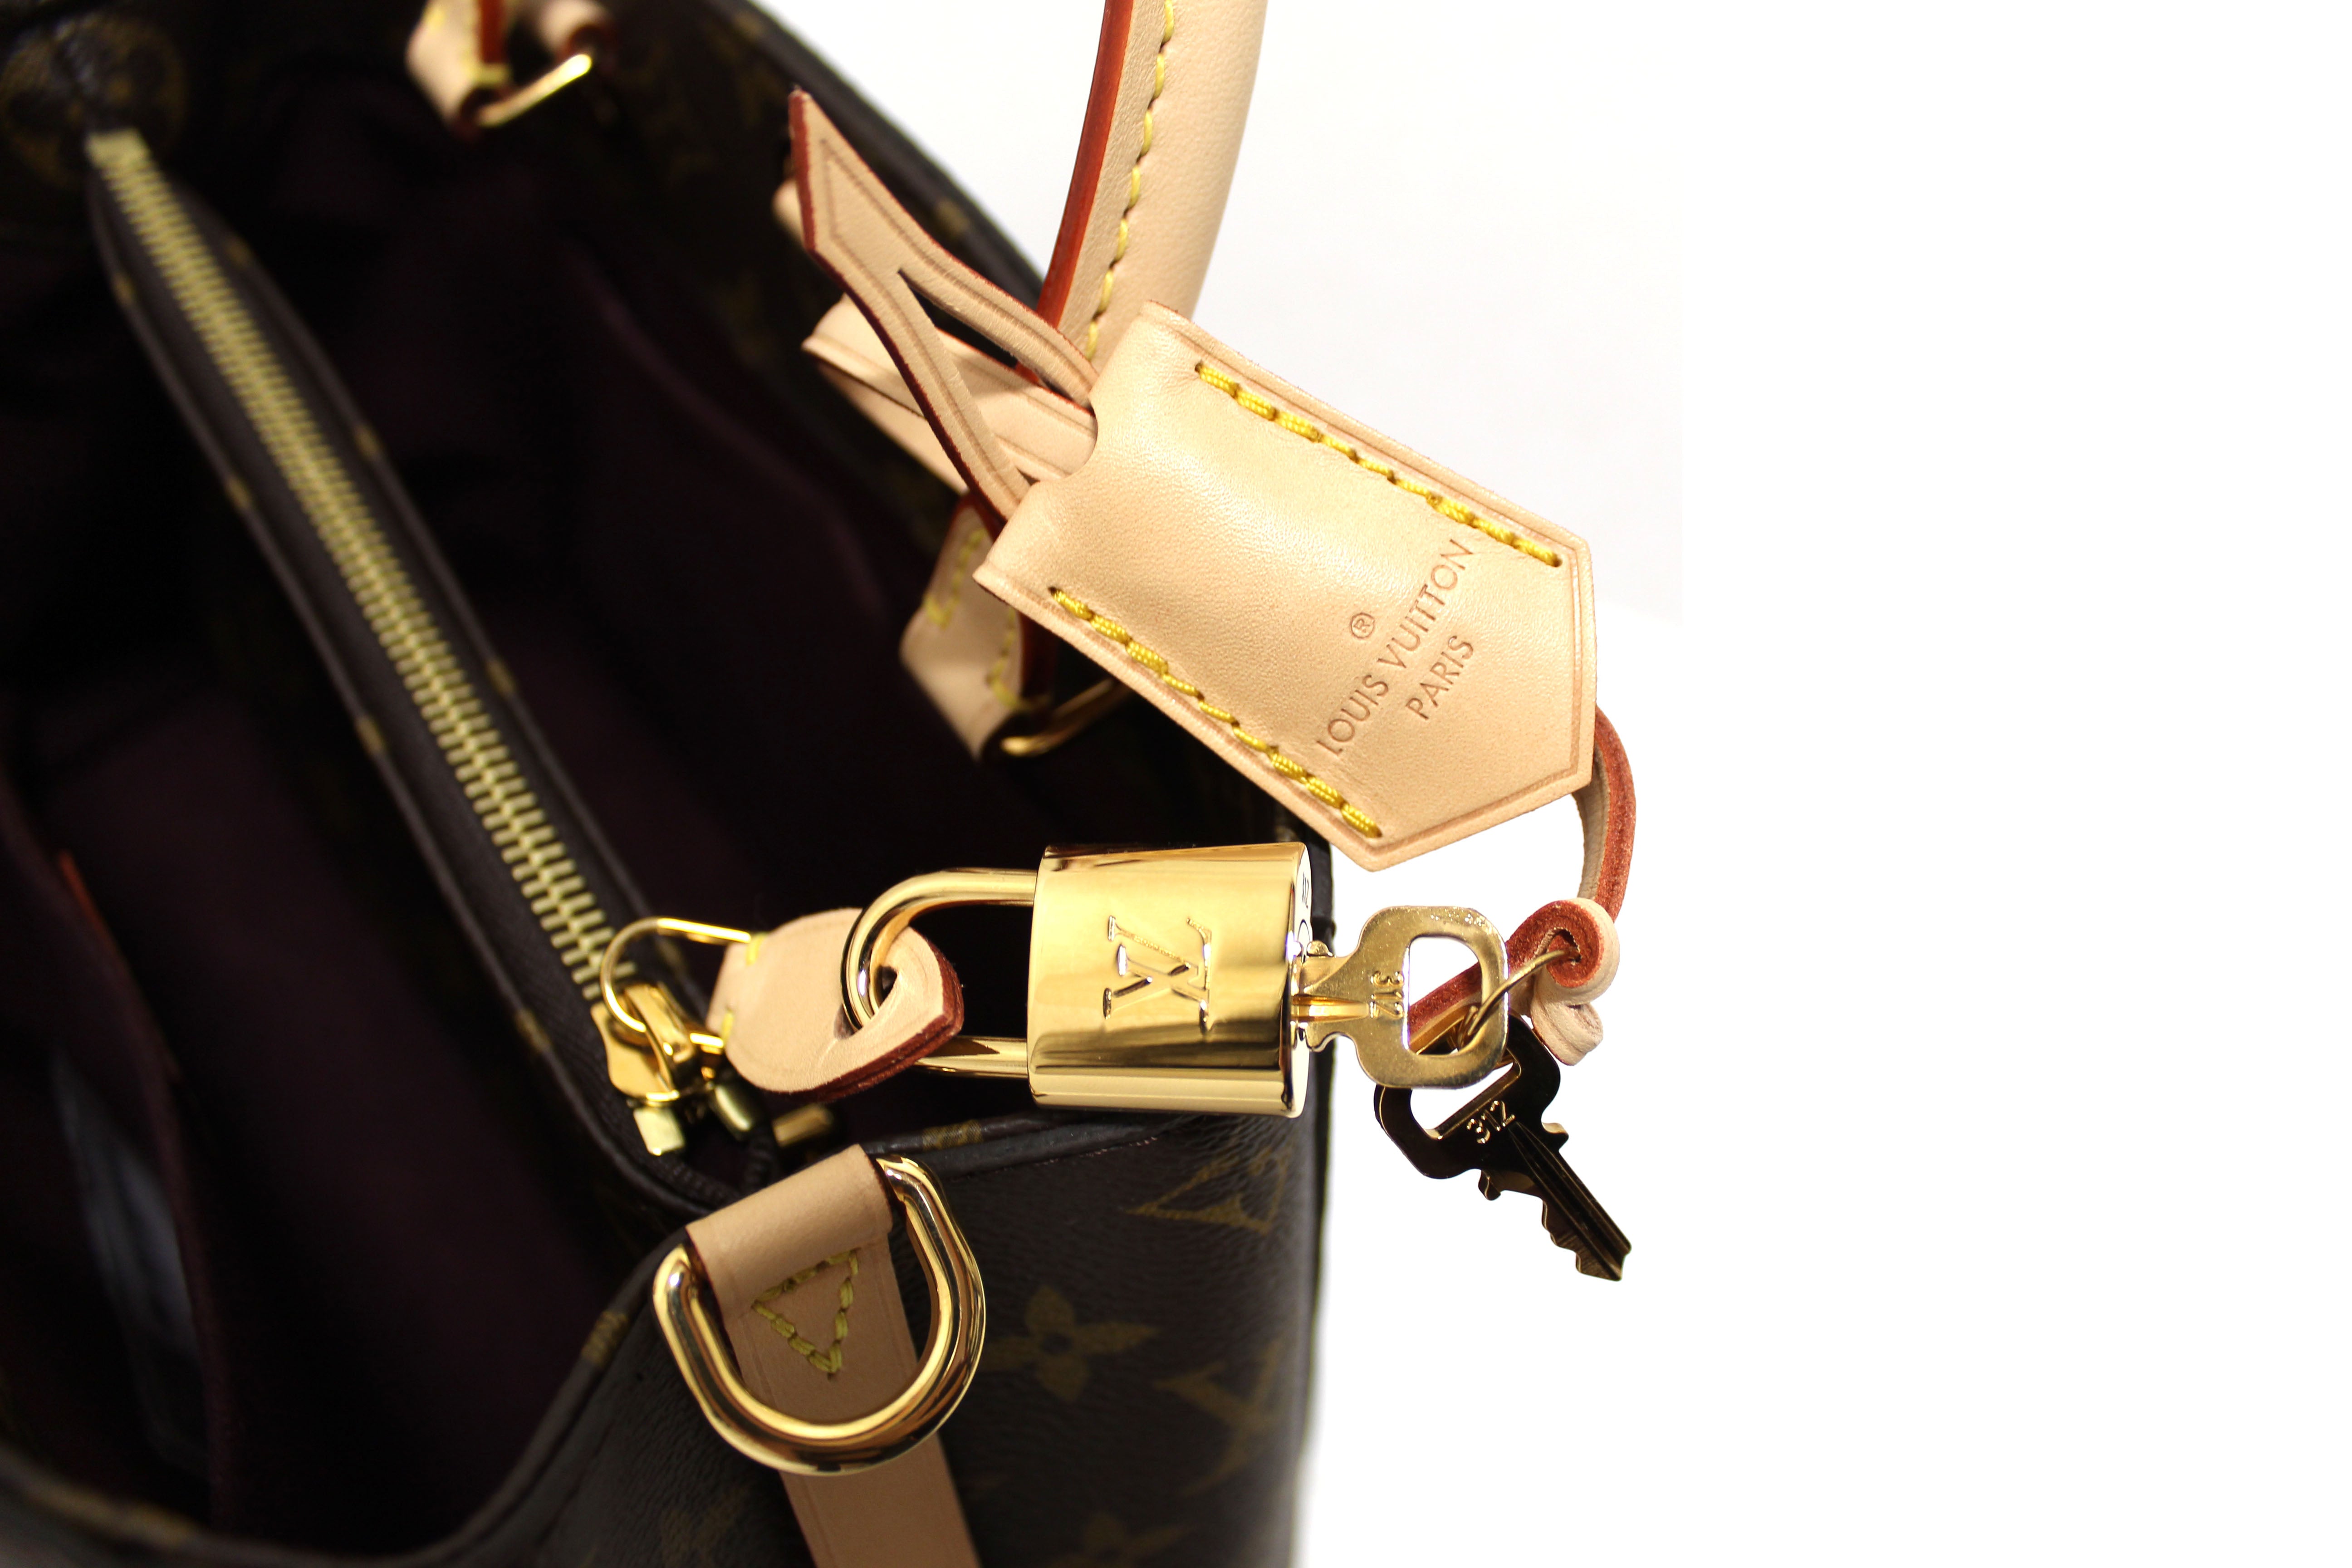 Authentic Louis Vuitton Monogram Montaigne BB Shoulder Handbag